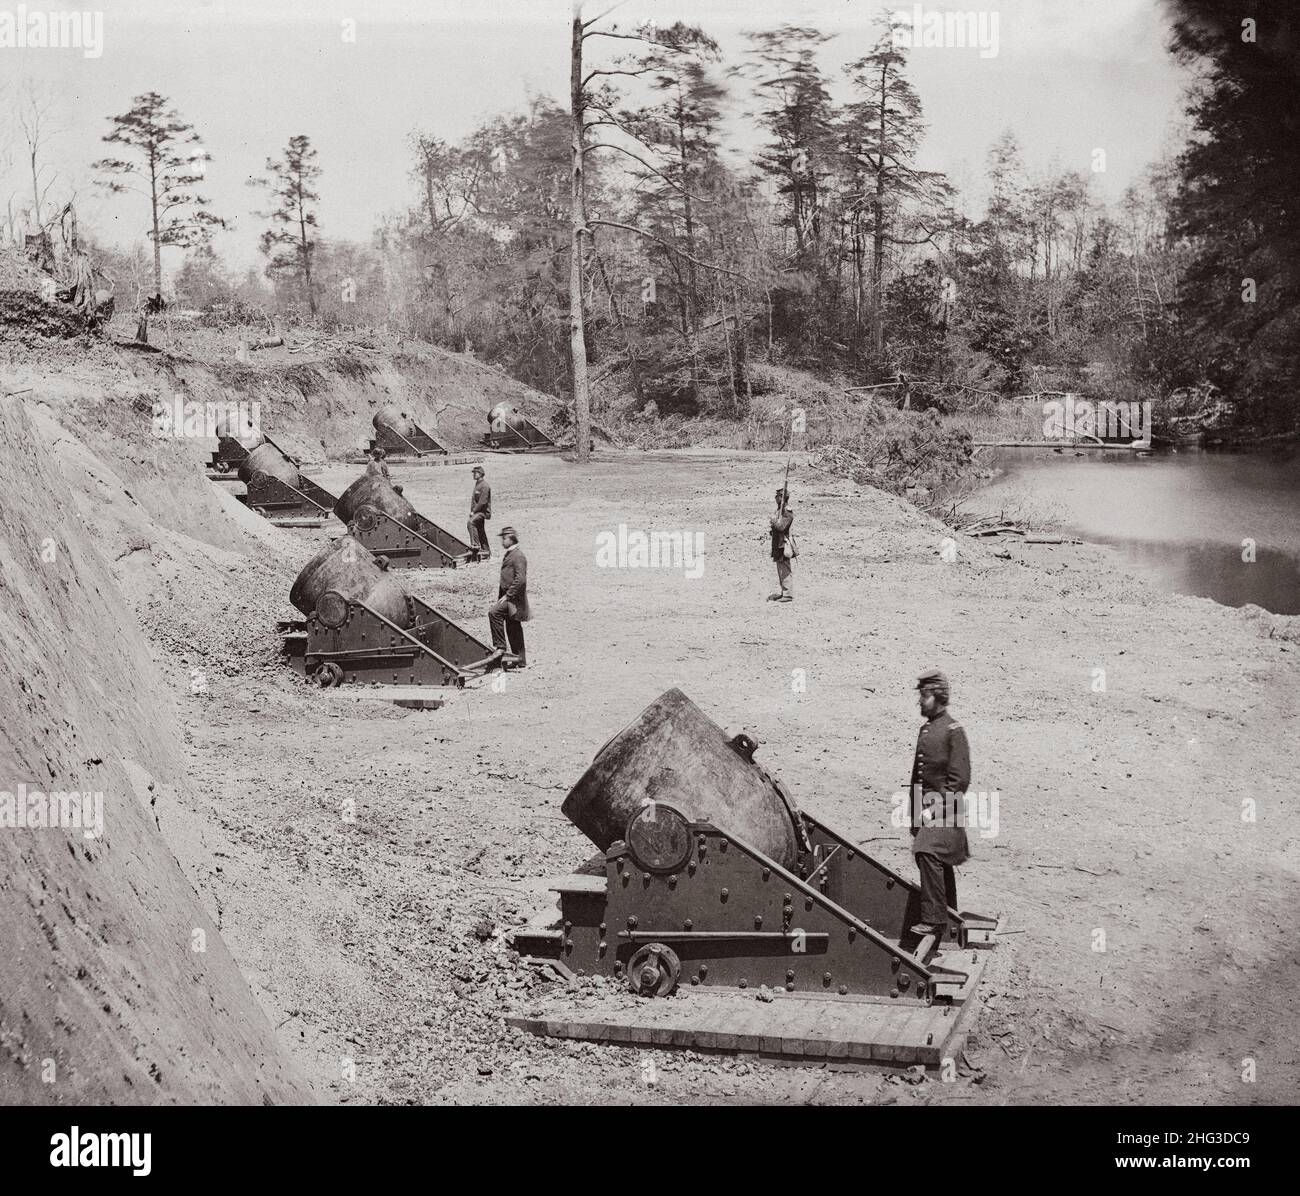 Guerre civile américaine, 1861-1865.Yorktown, Virginie.Batterie n° 4 montage de mortiers de 13 pouces.Extrémité sud des États-Unis Banque D'Images